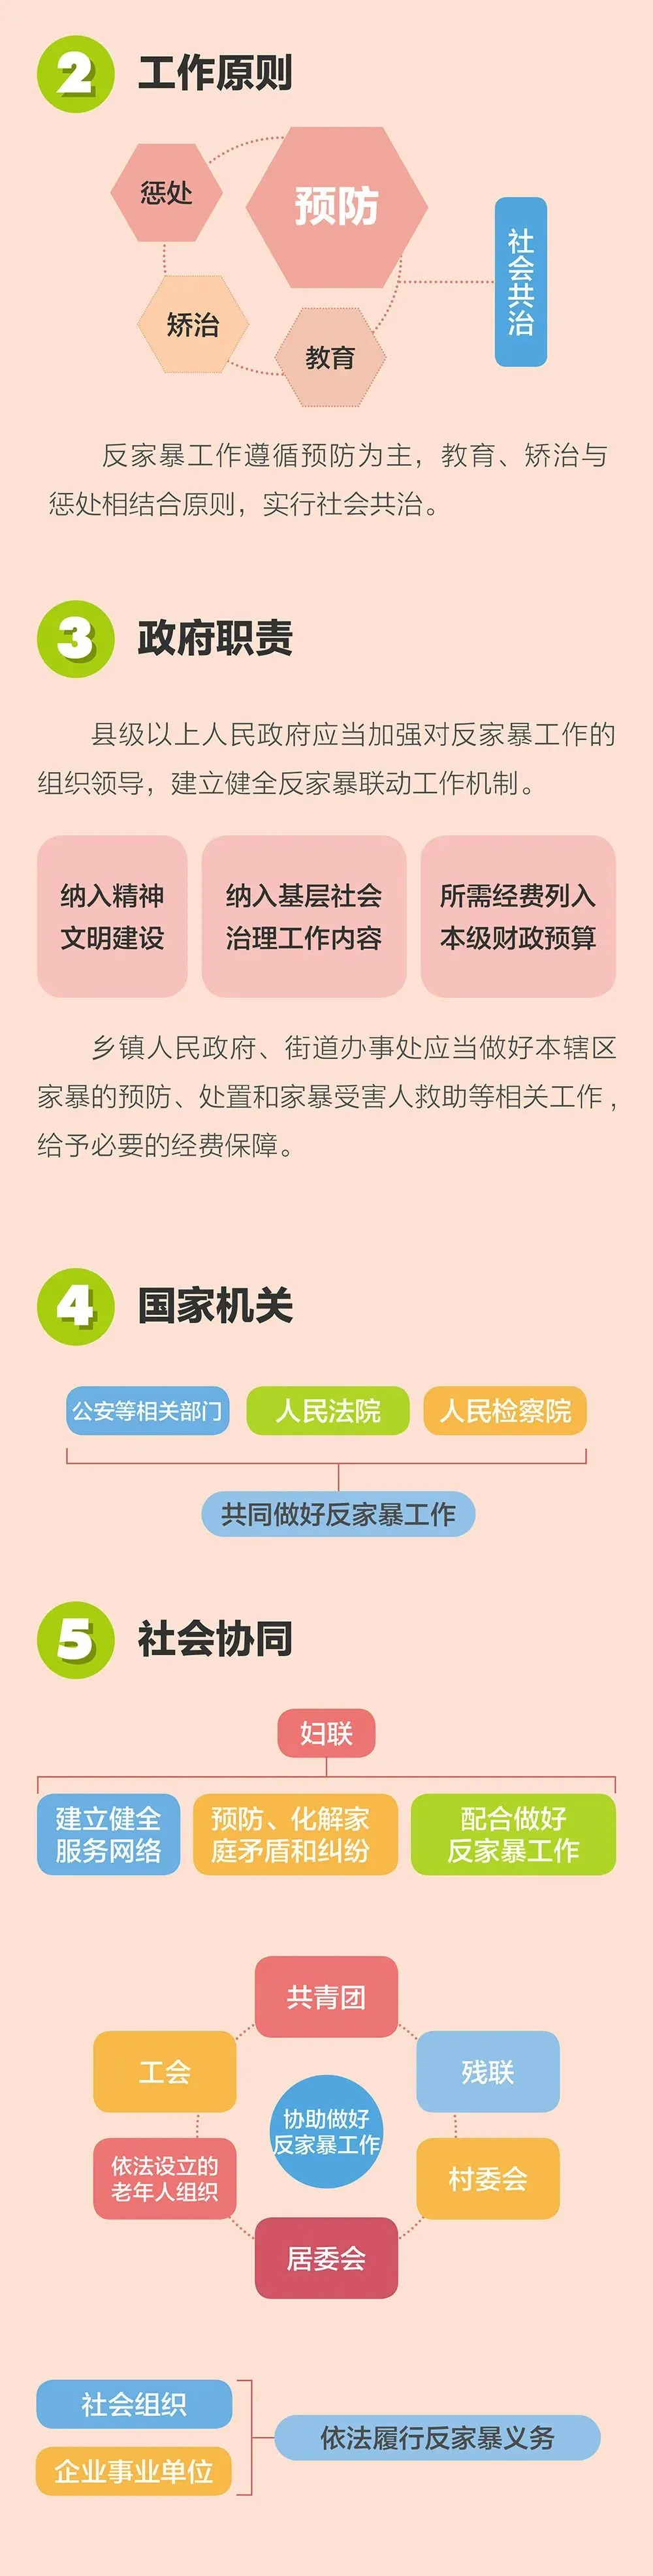 中华人民共和国反家庭暴力法,中华人民共和国反家庭暴力法于2016年3月1日起正式实施